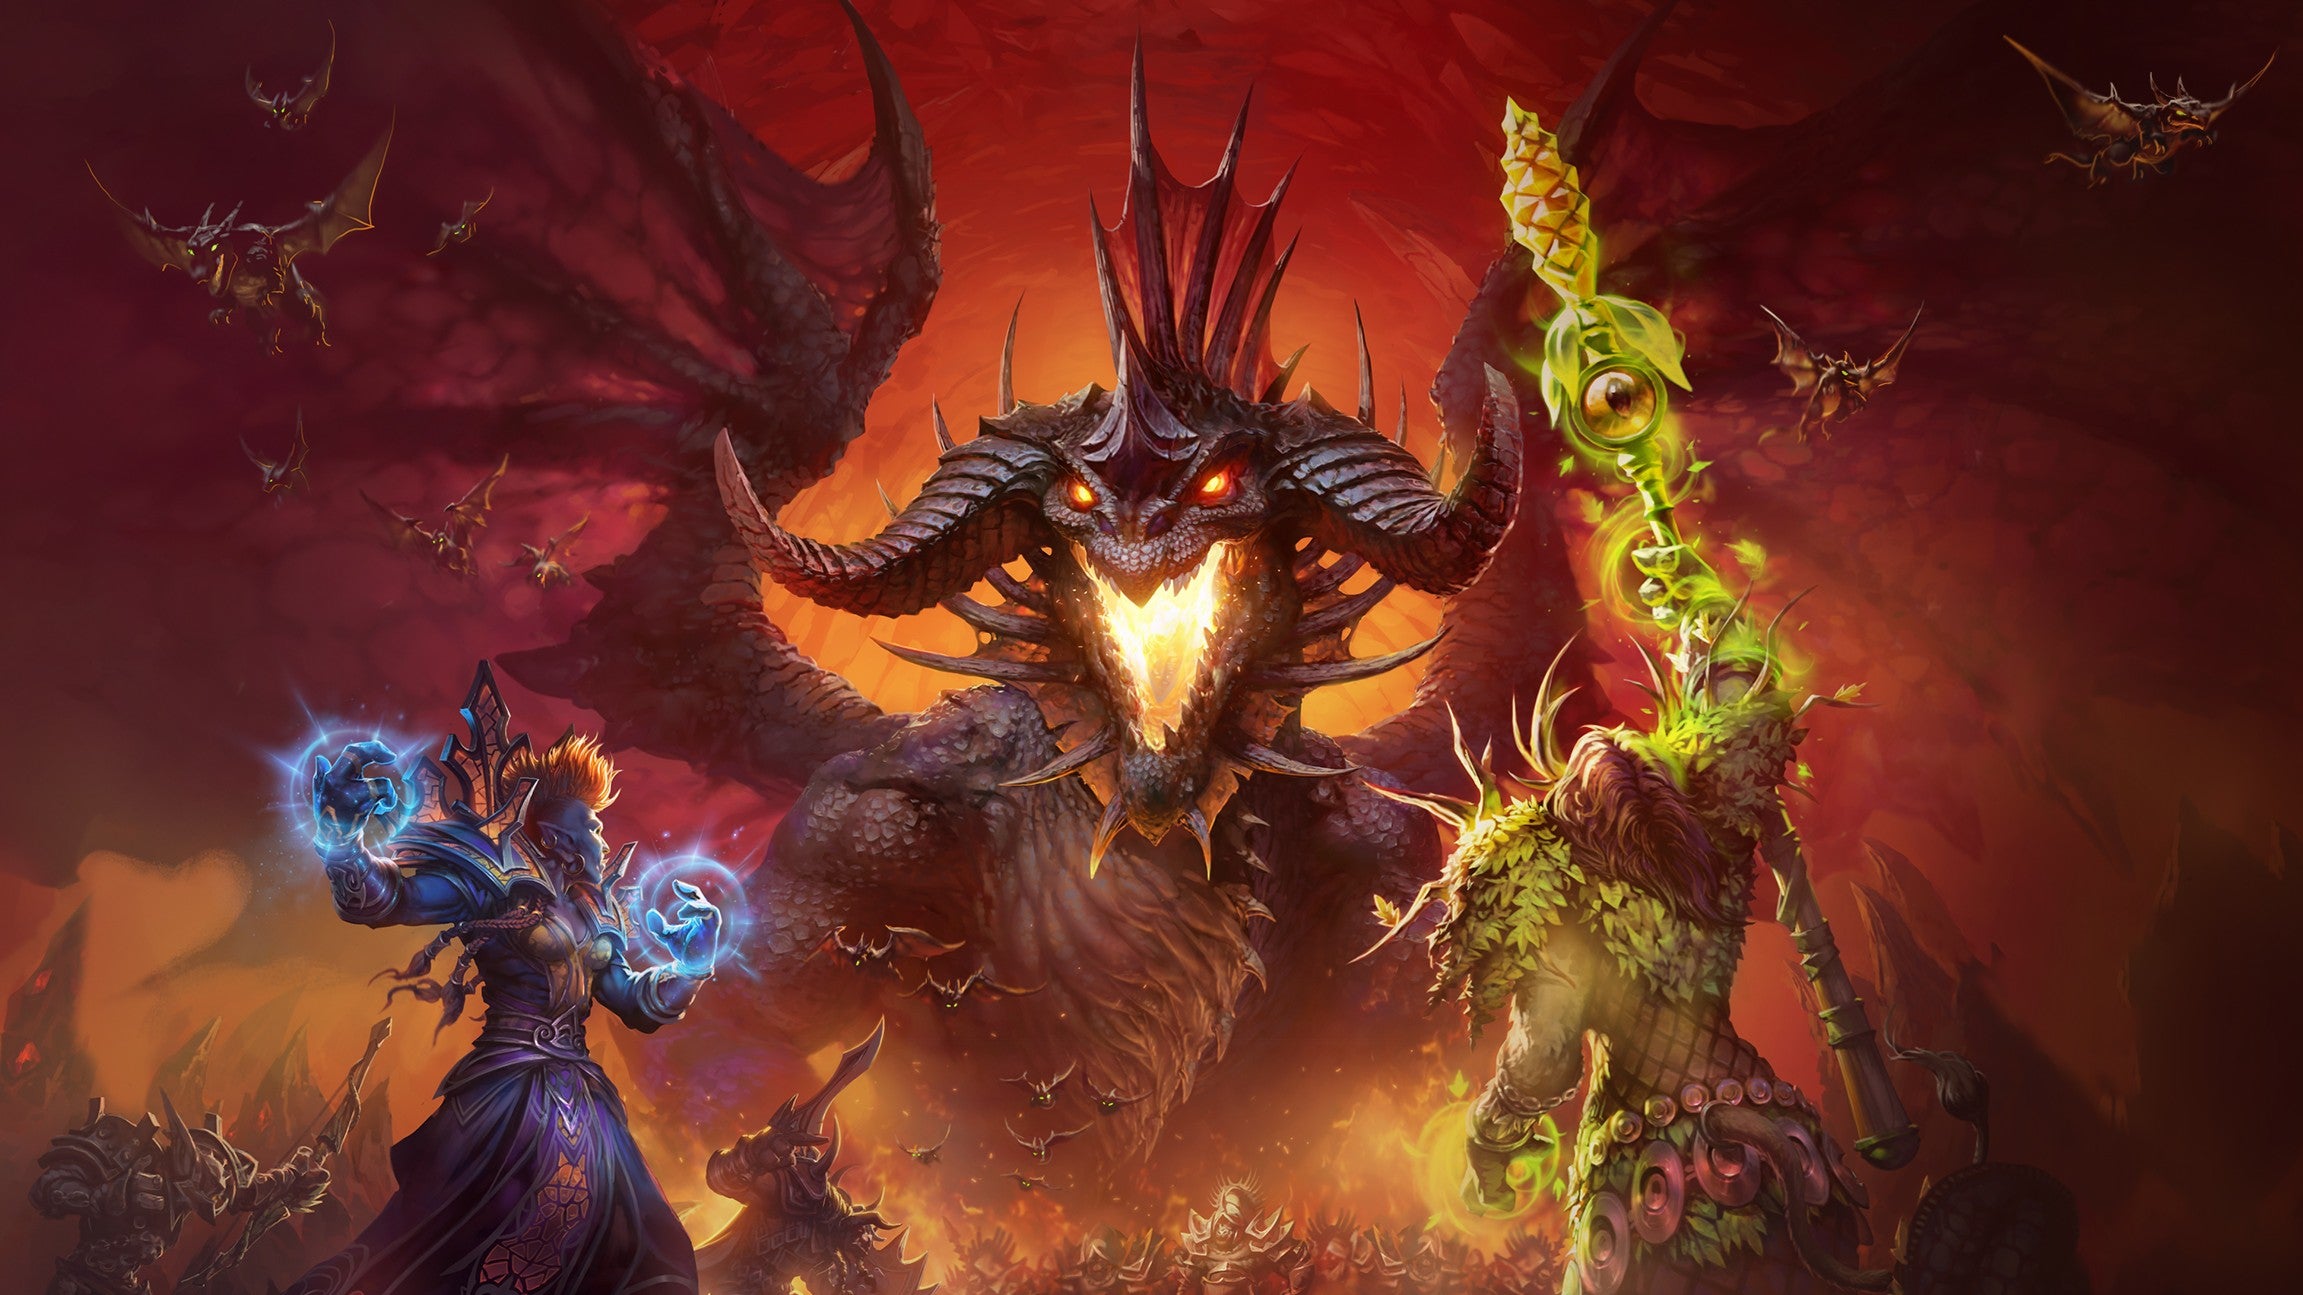 Pemimpin World of Warcraft meninggalkan Blizzard sebagai protes atas kebijakan peringkat karyawan yang dipaksakan